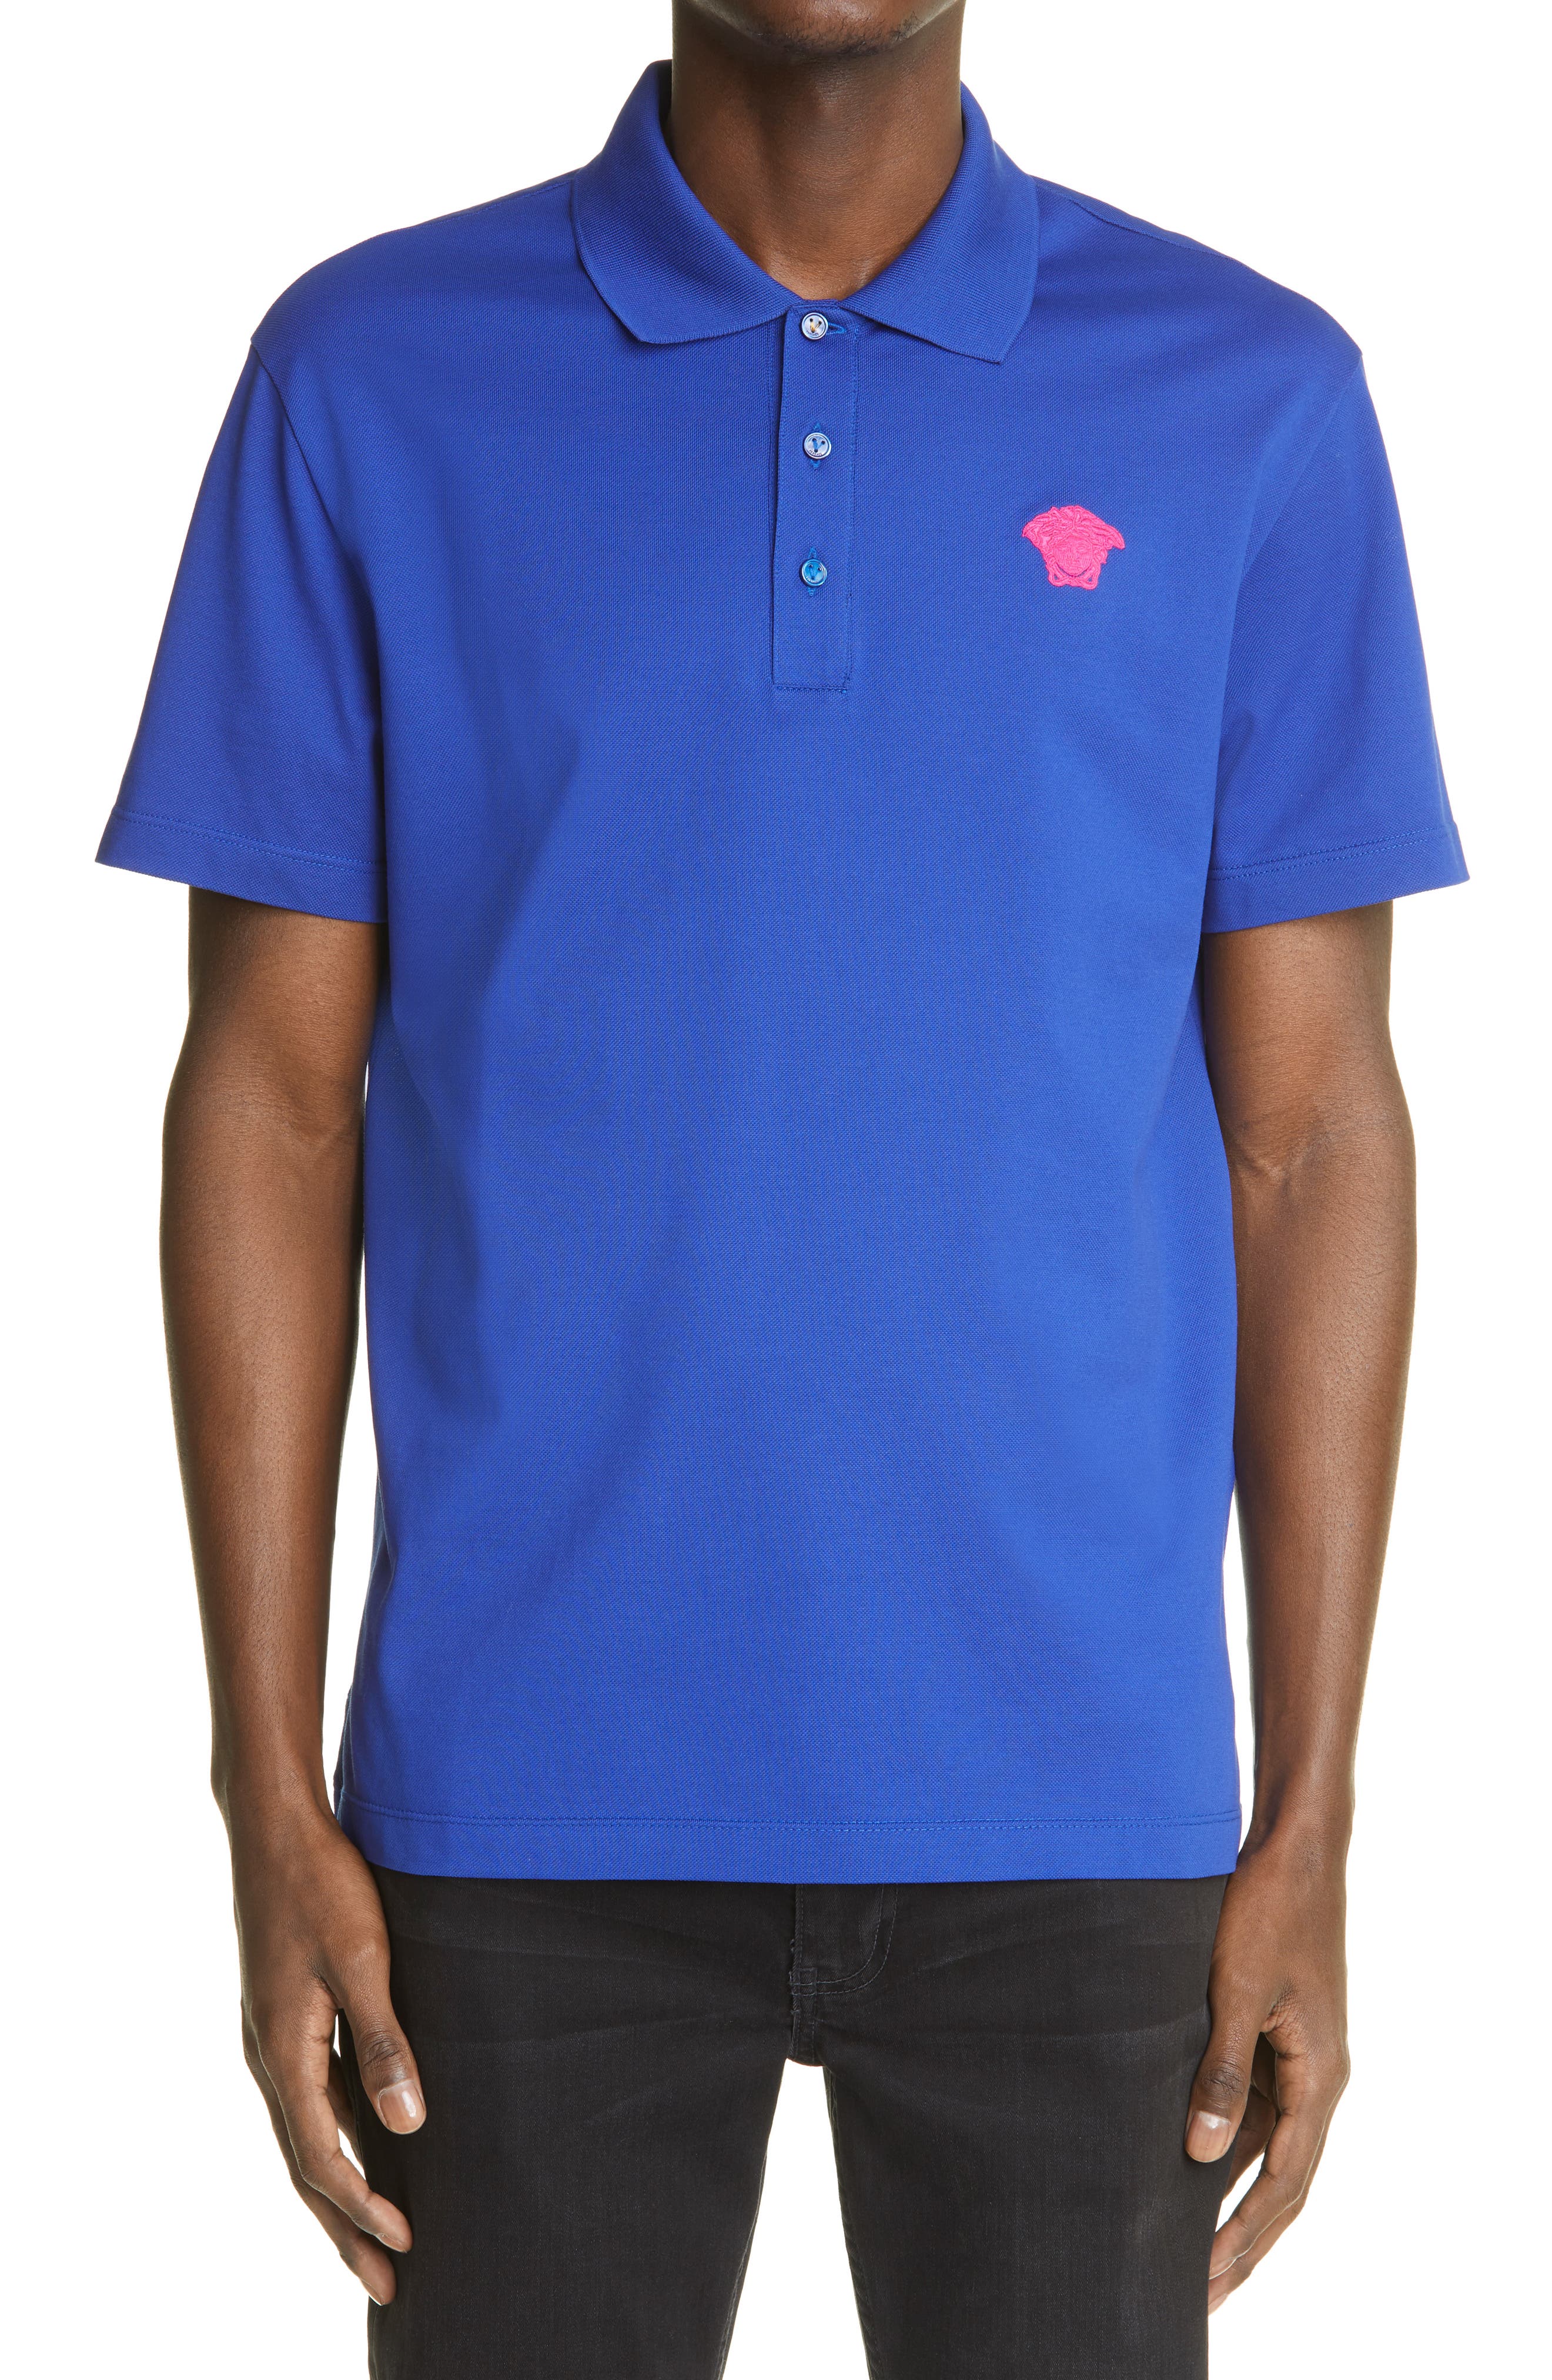 versace golf t shirt